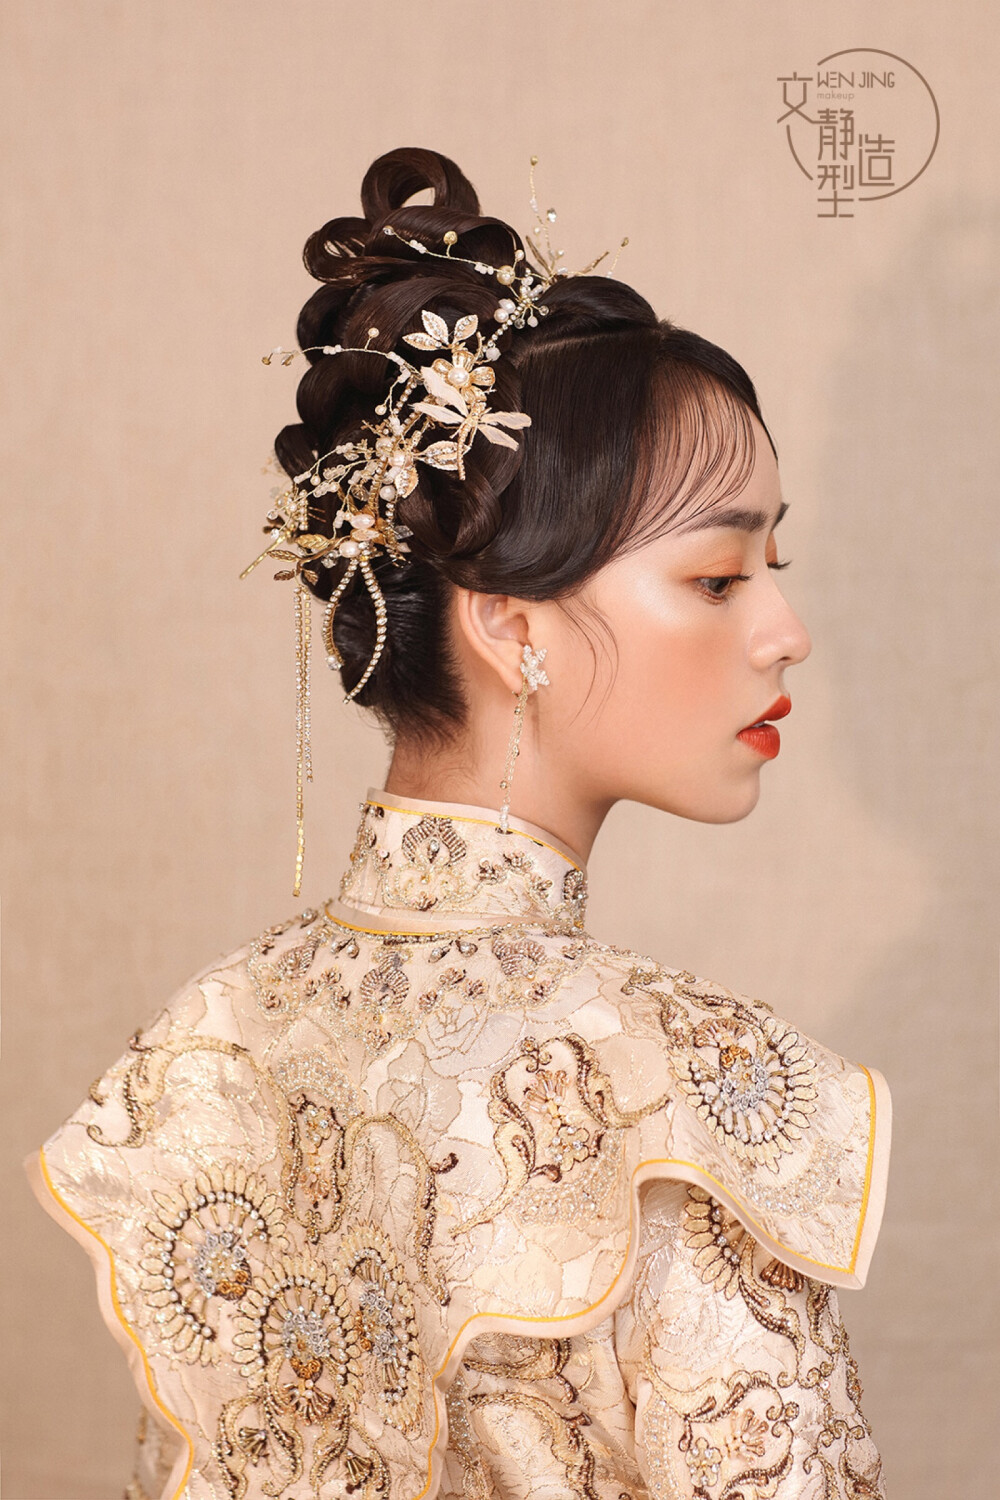 中式卷筒造型 新娘造型 新娘发型 新娘化妆 清浅中式 秀禾服造型 妆发